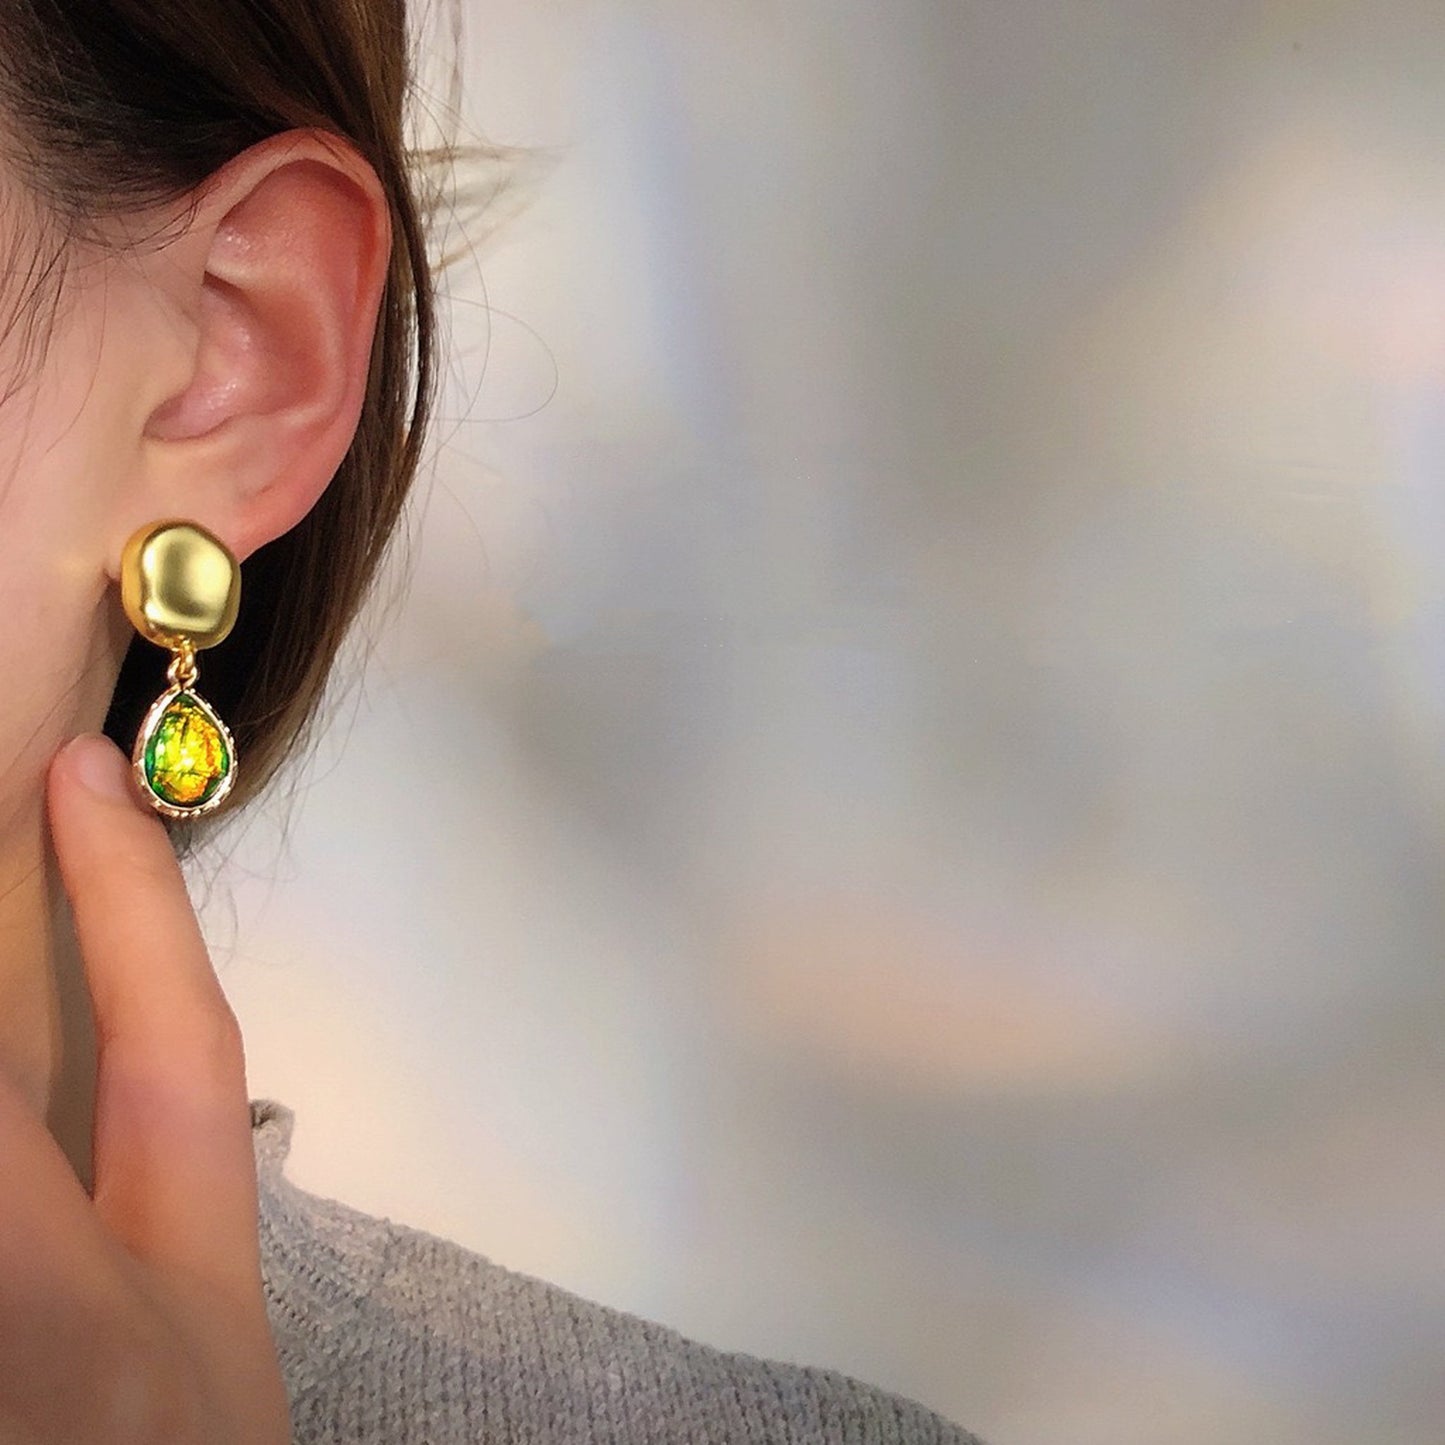 Vintage Style Teardrop Earrings, Green Earrings, Iridescent Jewelry, Shell Earrings, Antique Gold Earrings, Unique Earrings, Handmade Gifts